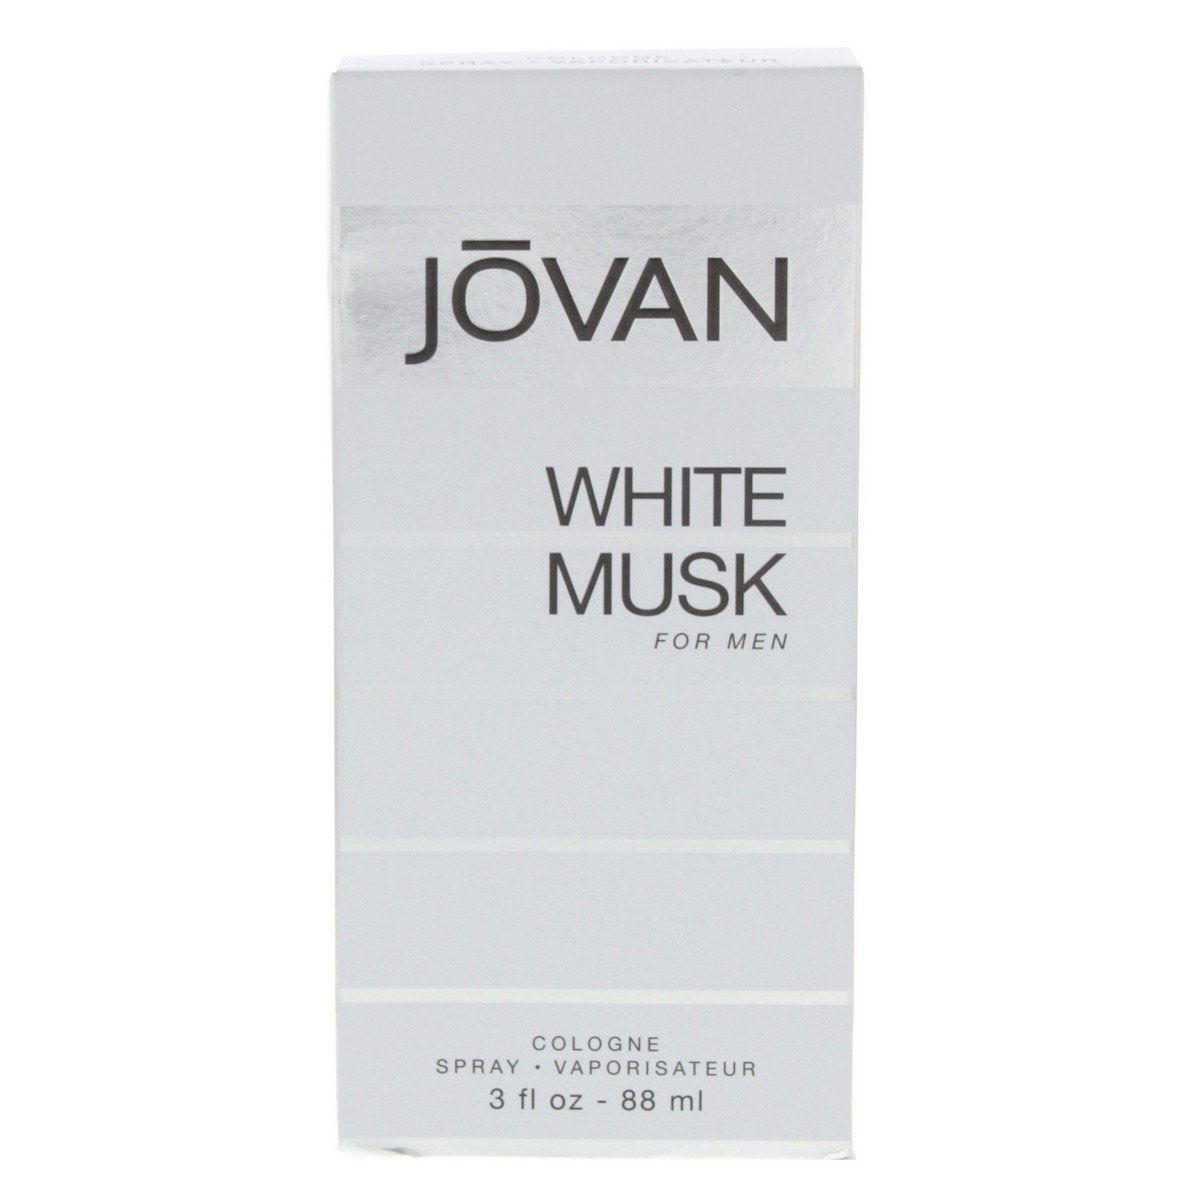 Jovan White Musk Cologne Spray for Men 88 ml